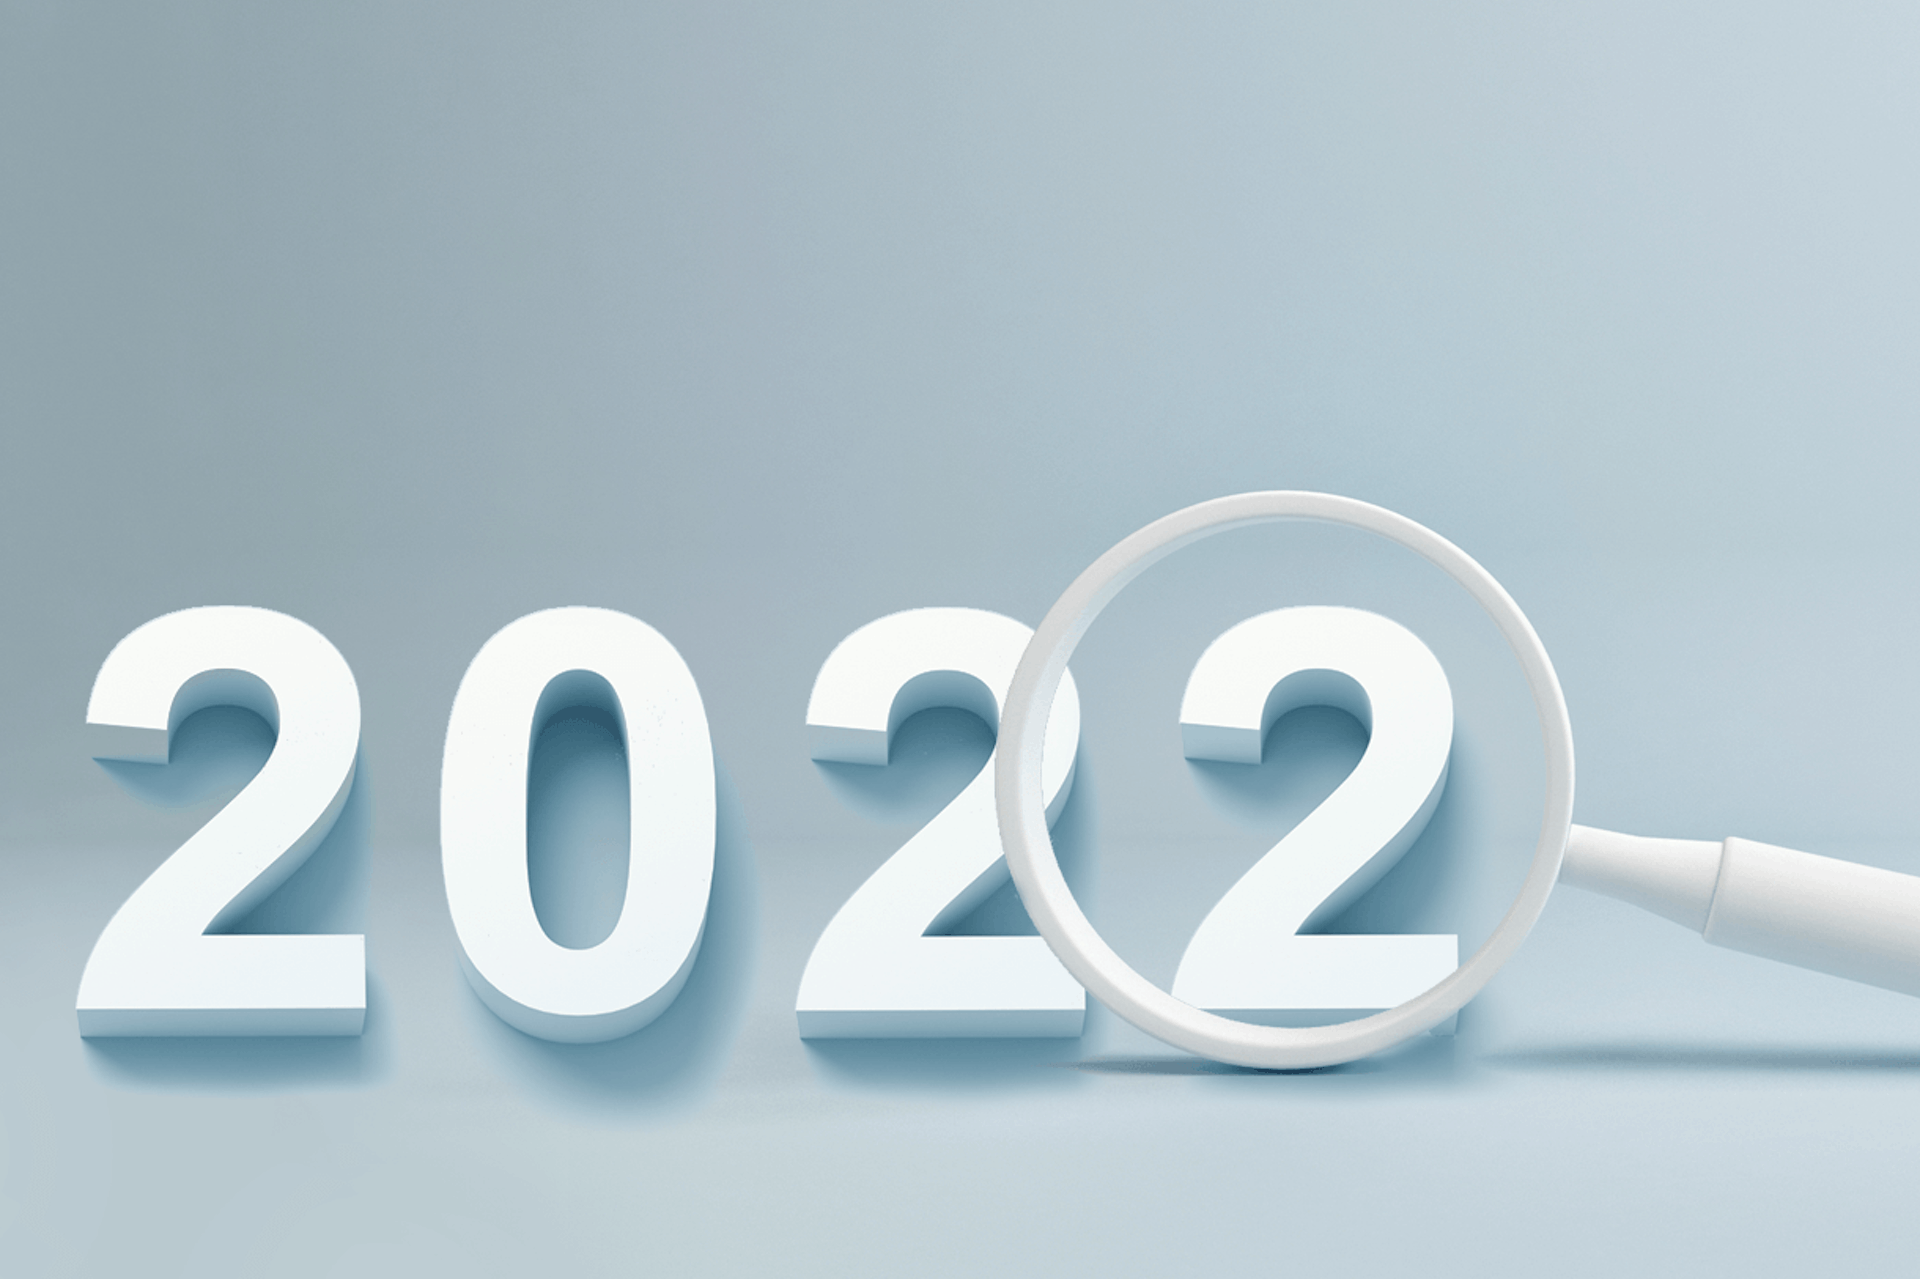 Suurennuslasi leijuu vuoden 2022 viimeisen 2:n yläpuolella blogissa, jossa käsitellään vuoden tärkeimpiä trendejä Meltwaterin sosiaalisen älykkyyden alustan analyysin mukaan.